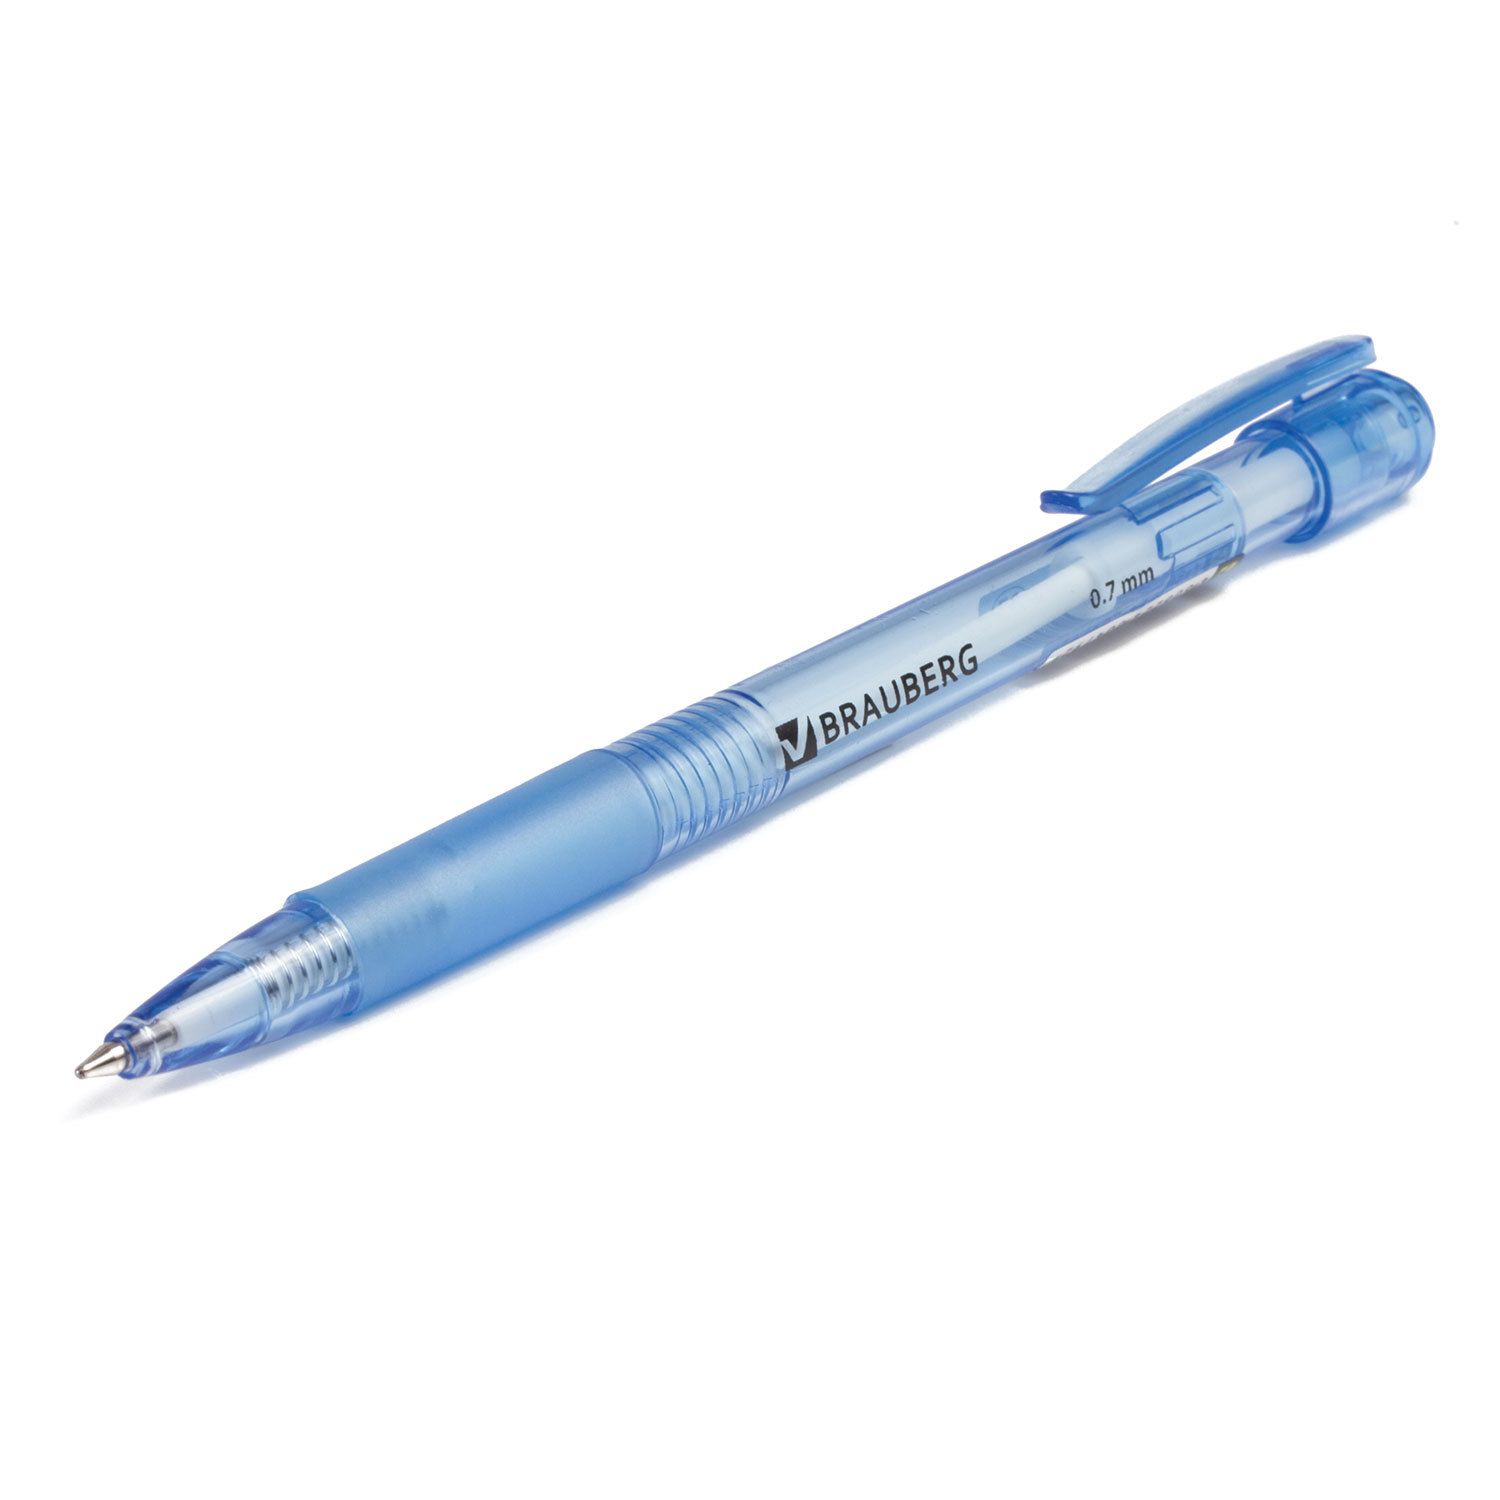 Brauberg 0.7. Ручка шариковая синяя БРАУБЕРГ. Ручка БРАУБЕРГ автоматическая шариковая. Ручка БРАУБЕРГ автоматическая синяя. Ручка автоматическая БРАУБЕРГ 0.7 мм.